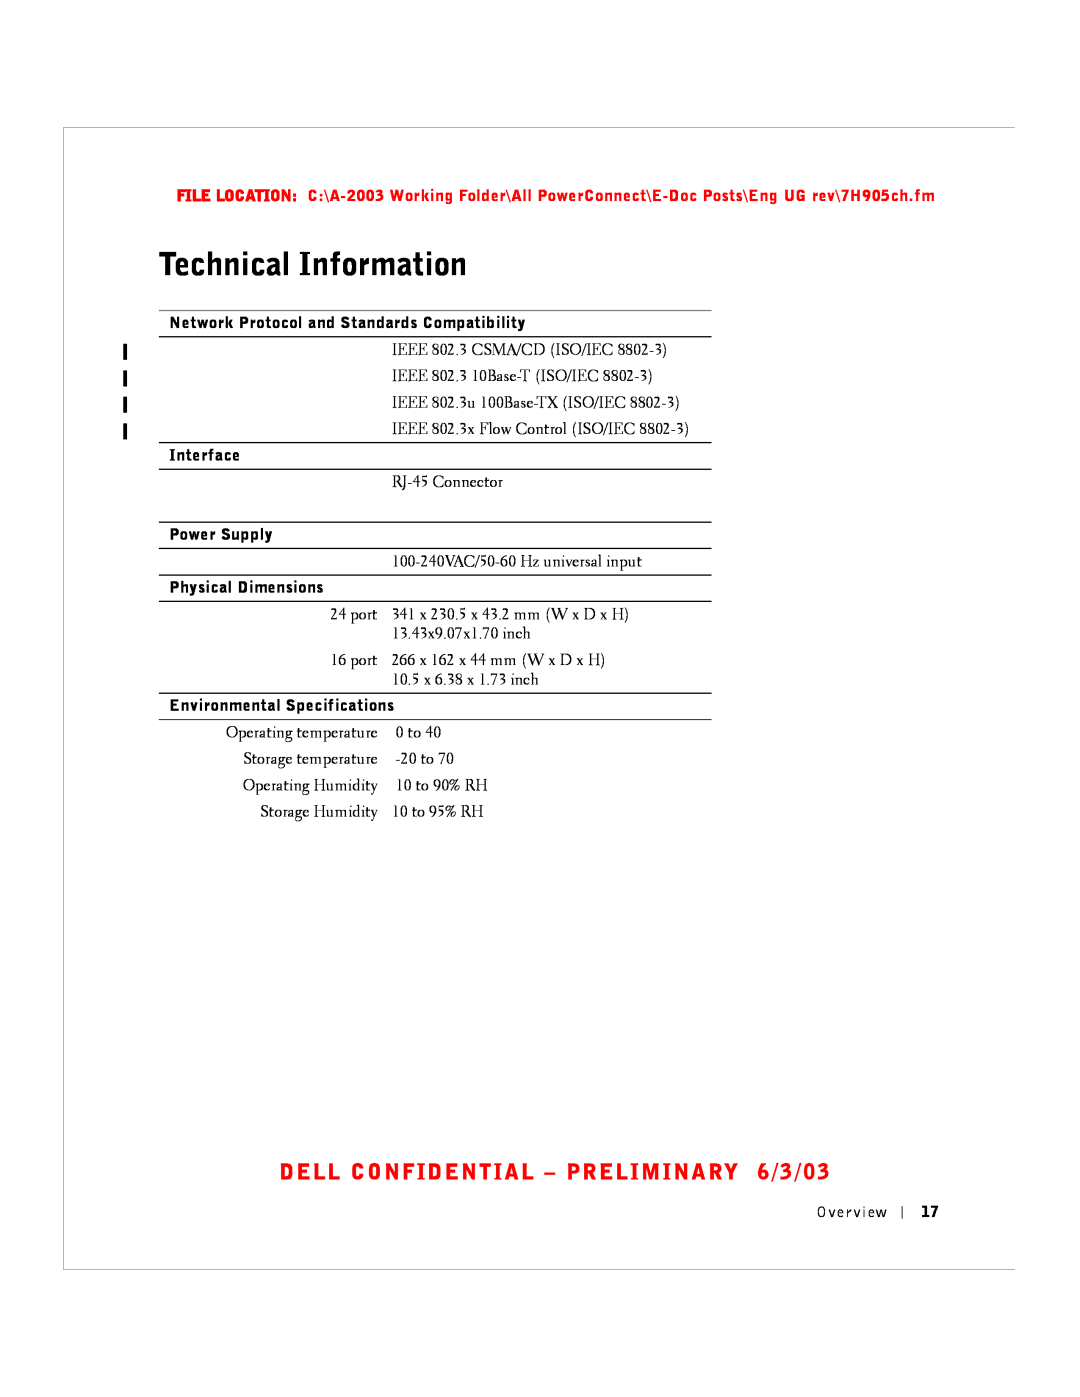 Dell 2016, 2024 manual Technical Information, DELL CONFIDENTIAL - PRELIMINARY 6/3/03 